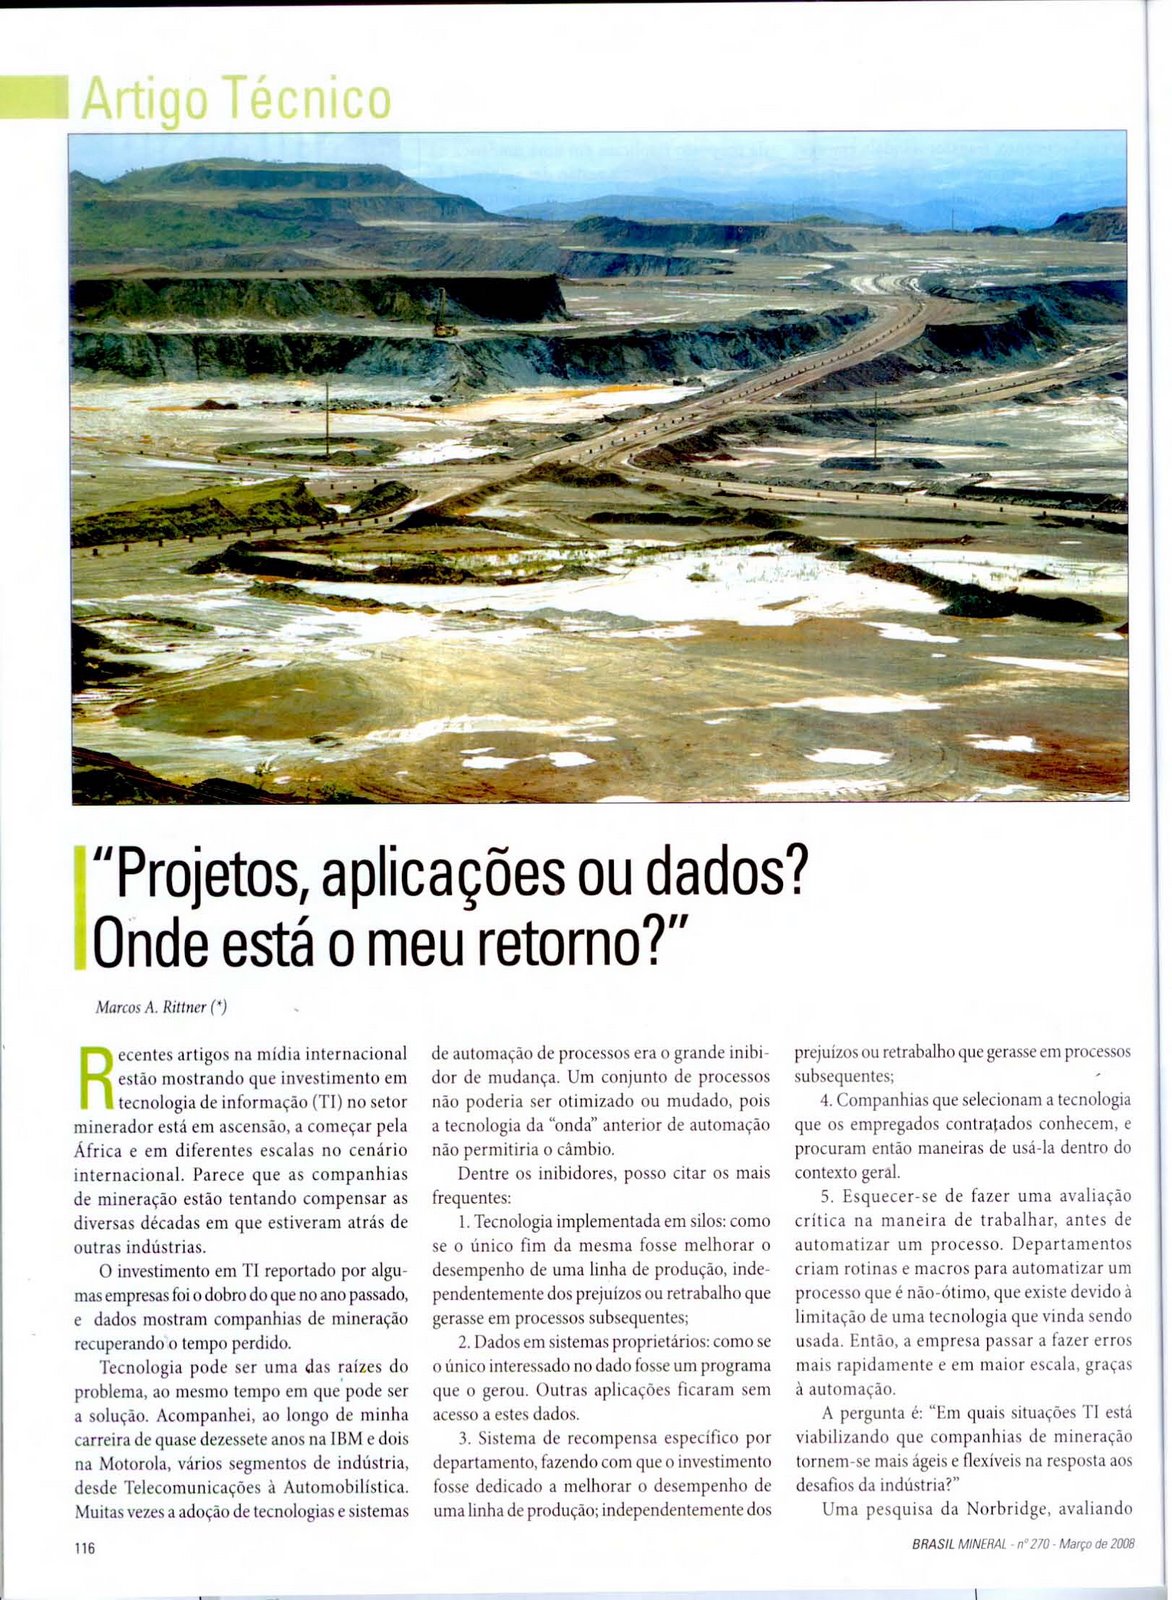 [Artigo+2008+Brasil+Mineral+,+pg+116.jpg]